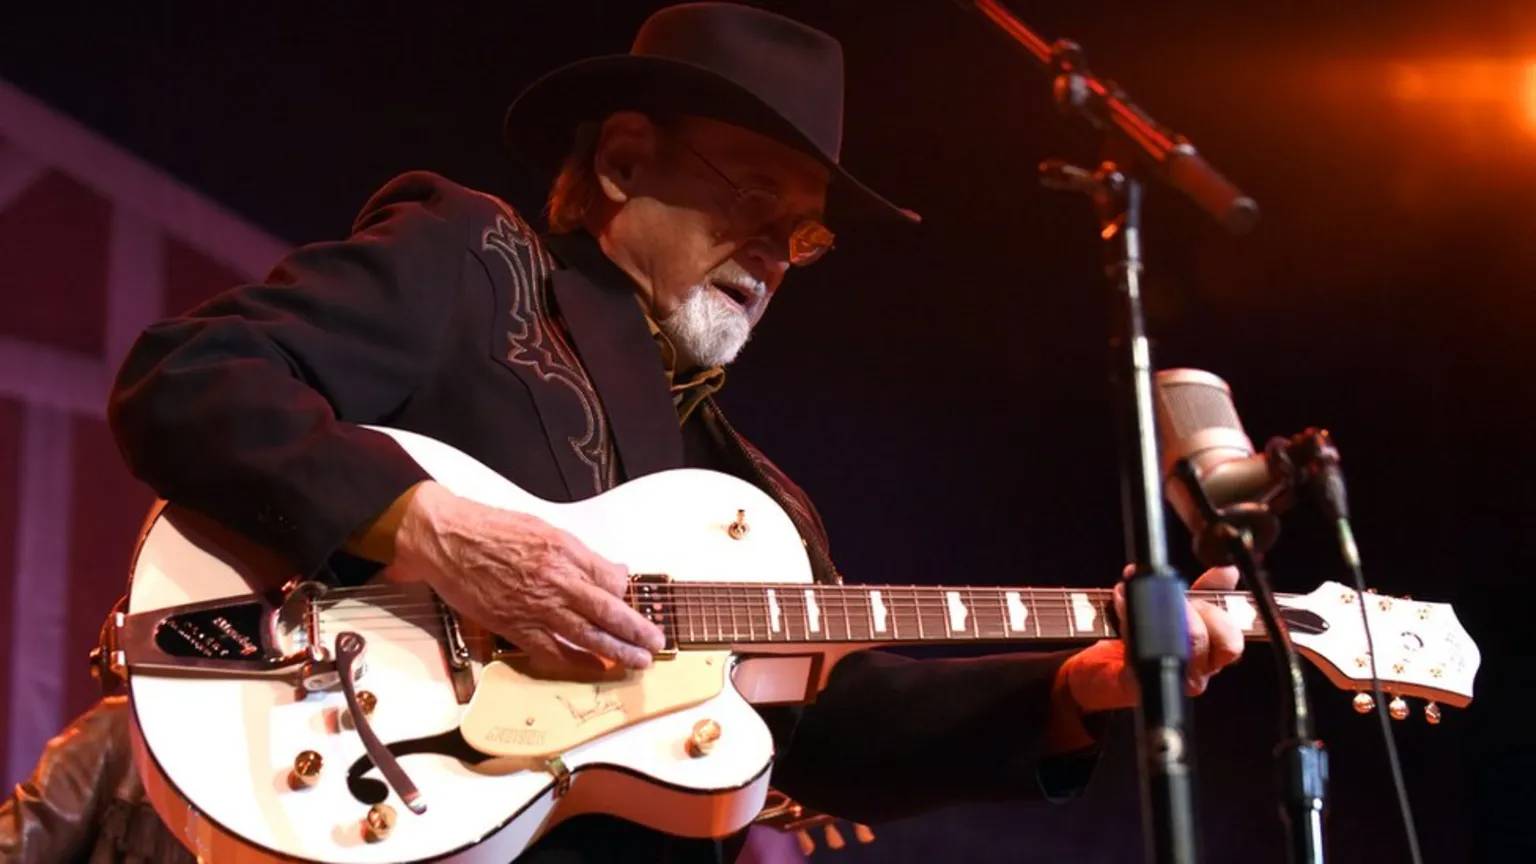 king of twang gitaristi duane eddy 86 yaşında hayatını kaybetti